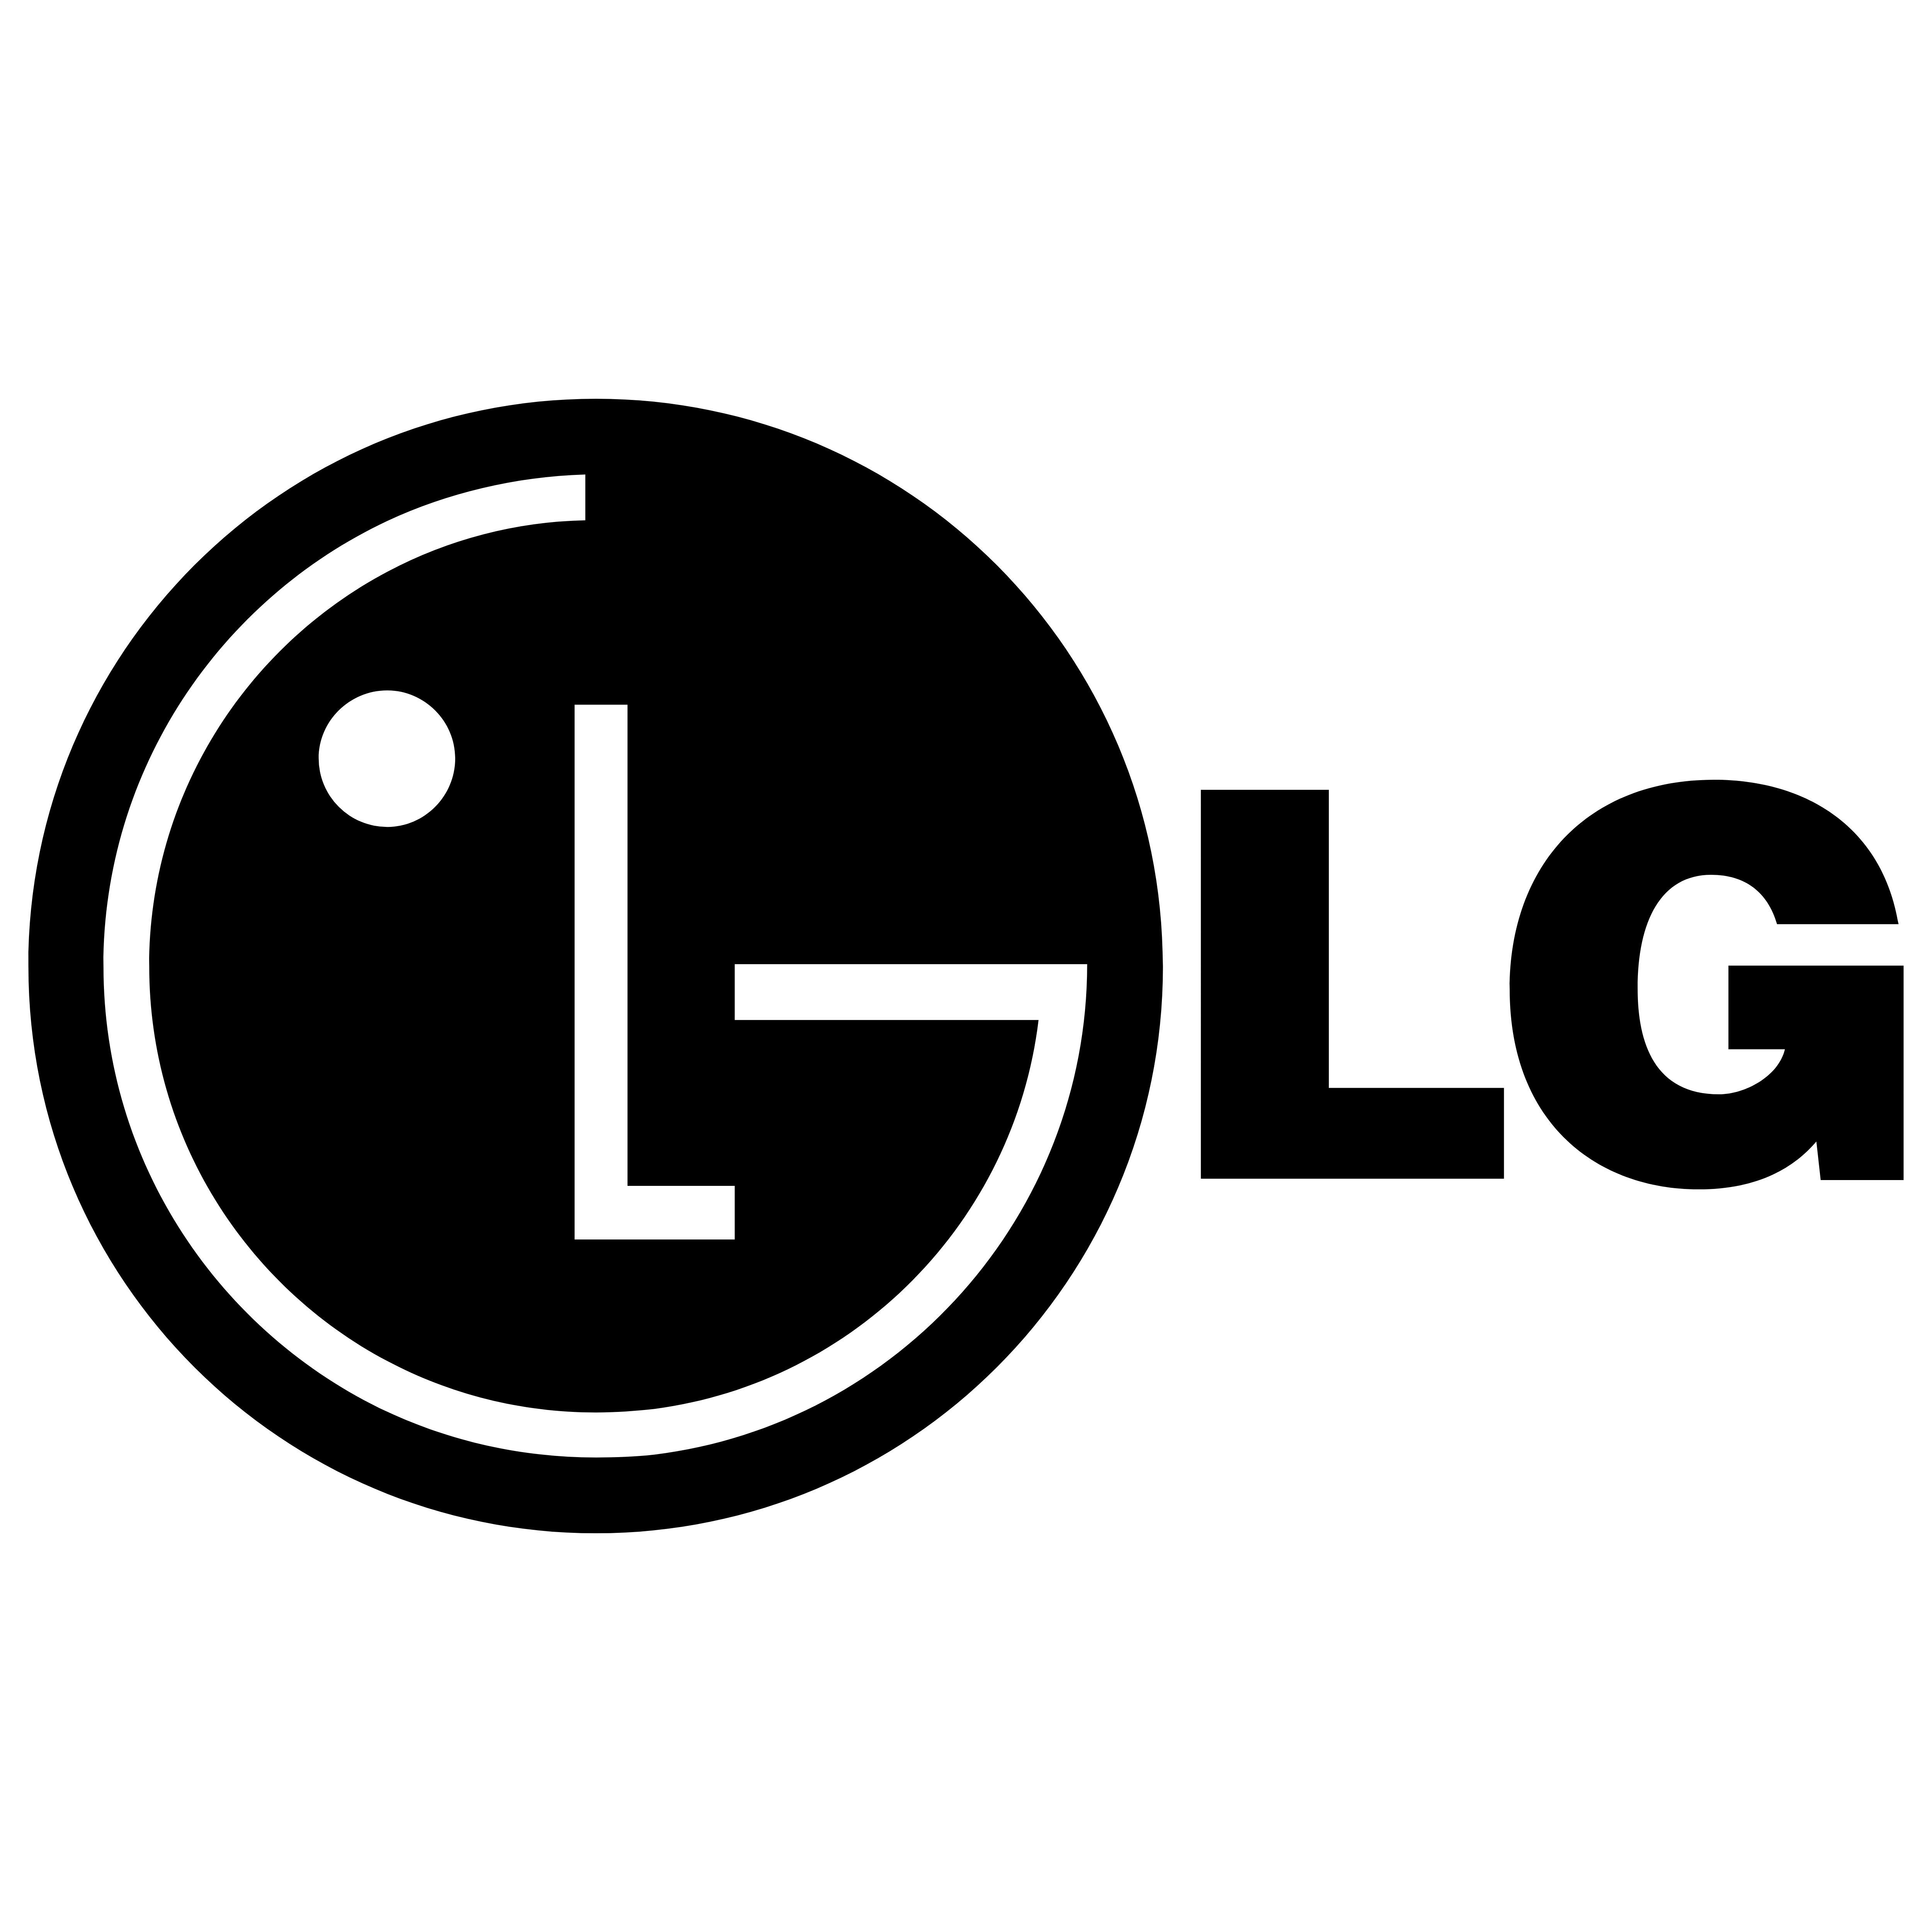 Лг. LG Electronics logo. Лого LG В векторе. LG логотип старый. LG логотип на белом фоне.